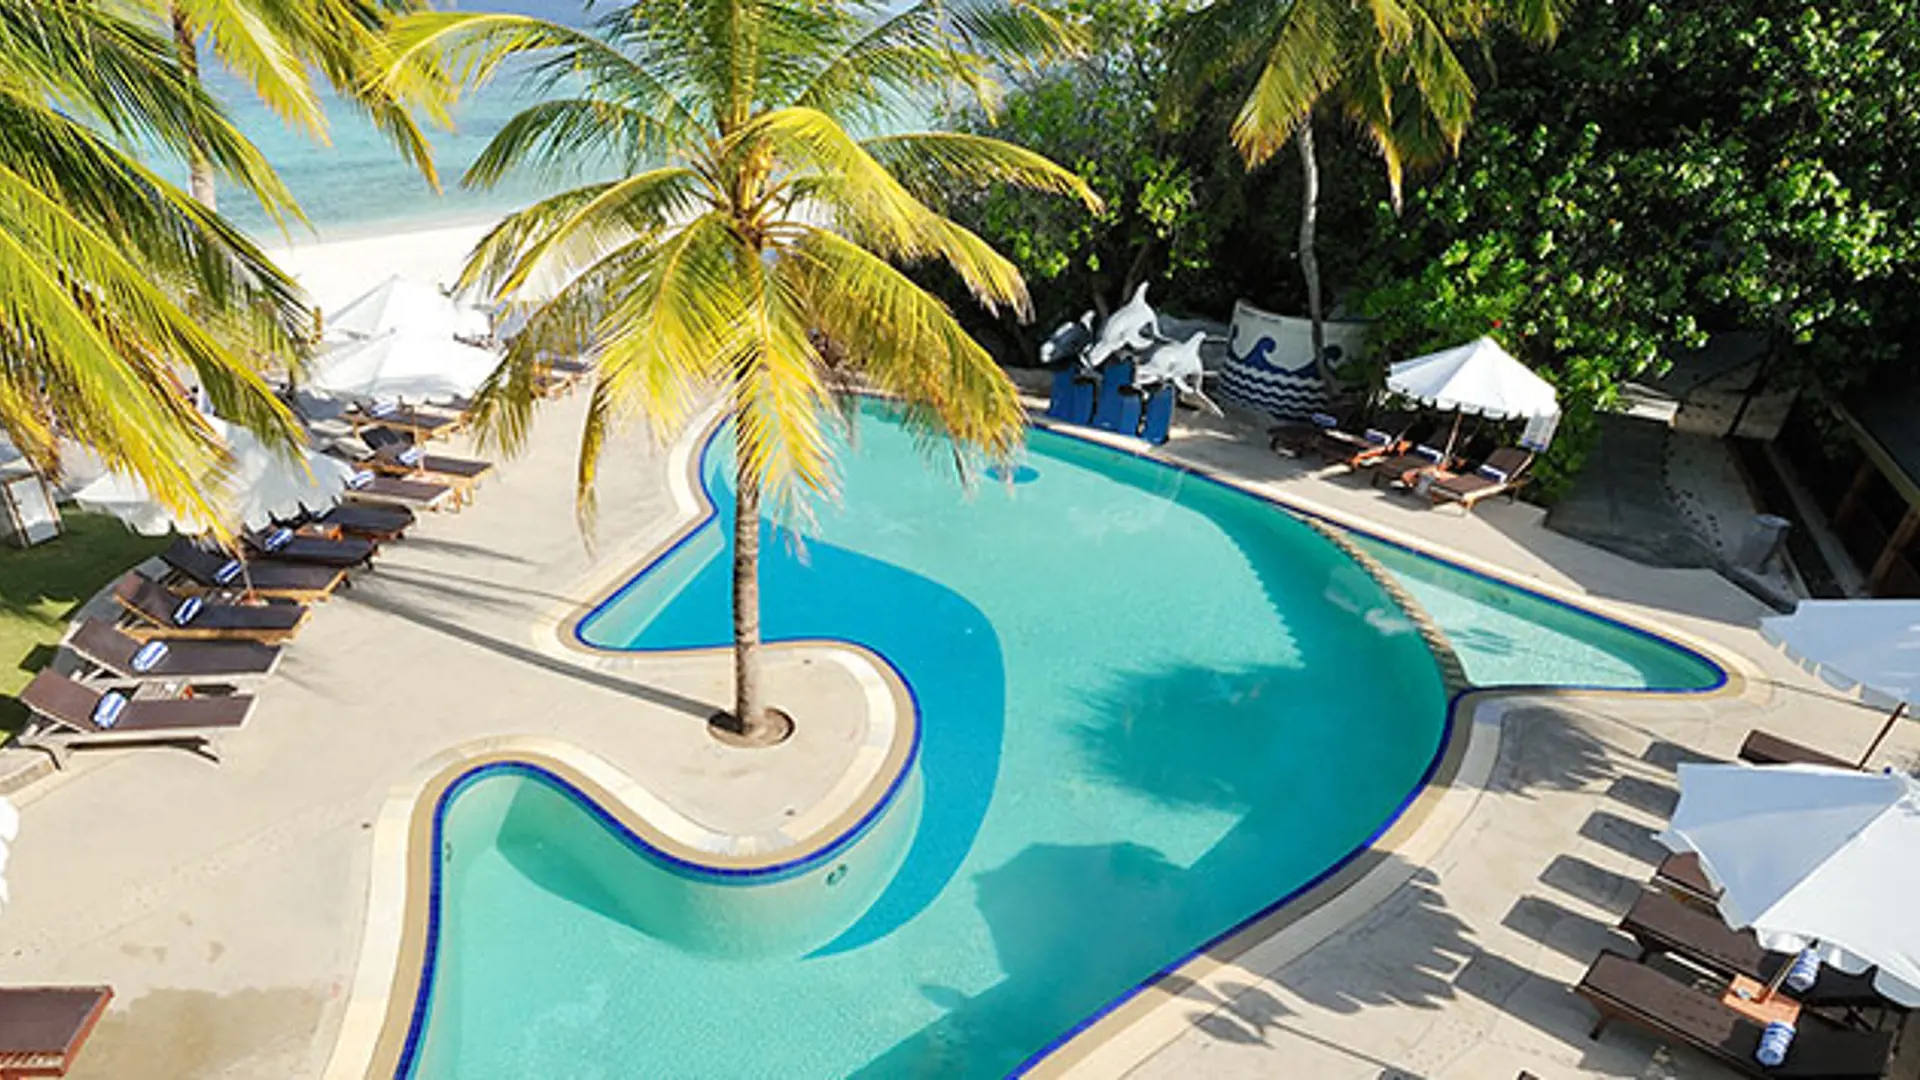 PARADISE ISLAND - udover flere restauranter og en skøn spa-afdeling tilbyder resortet ligeledes adgang til swimmingpool, Check Point Travel